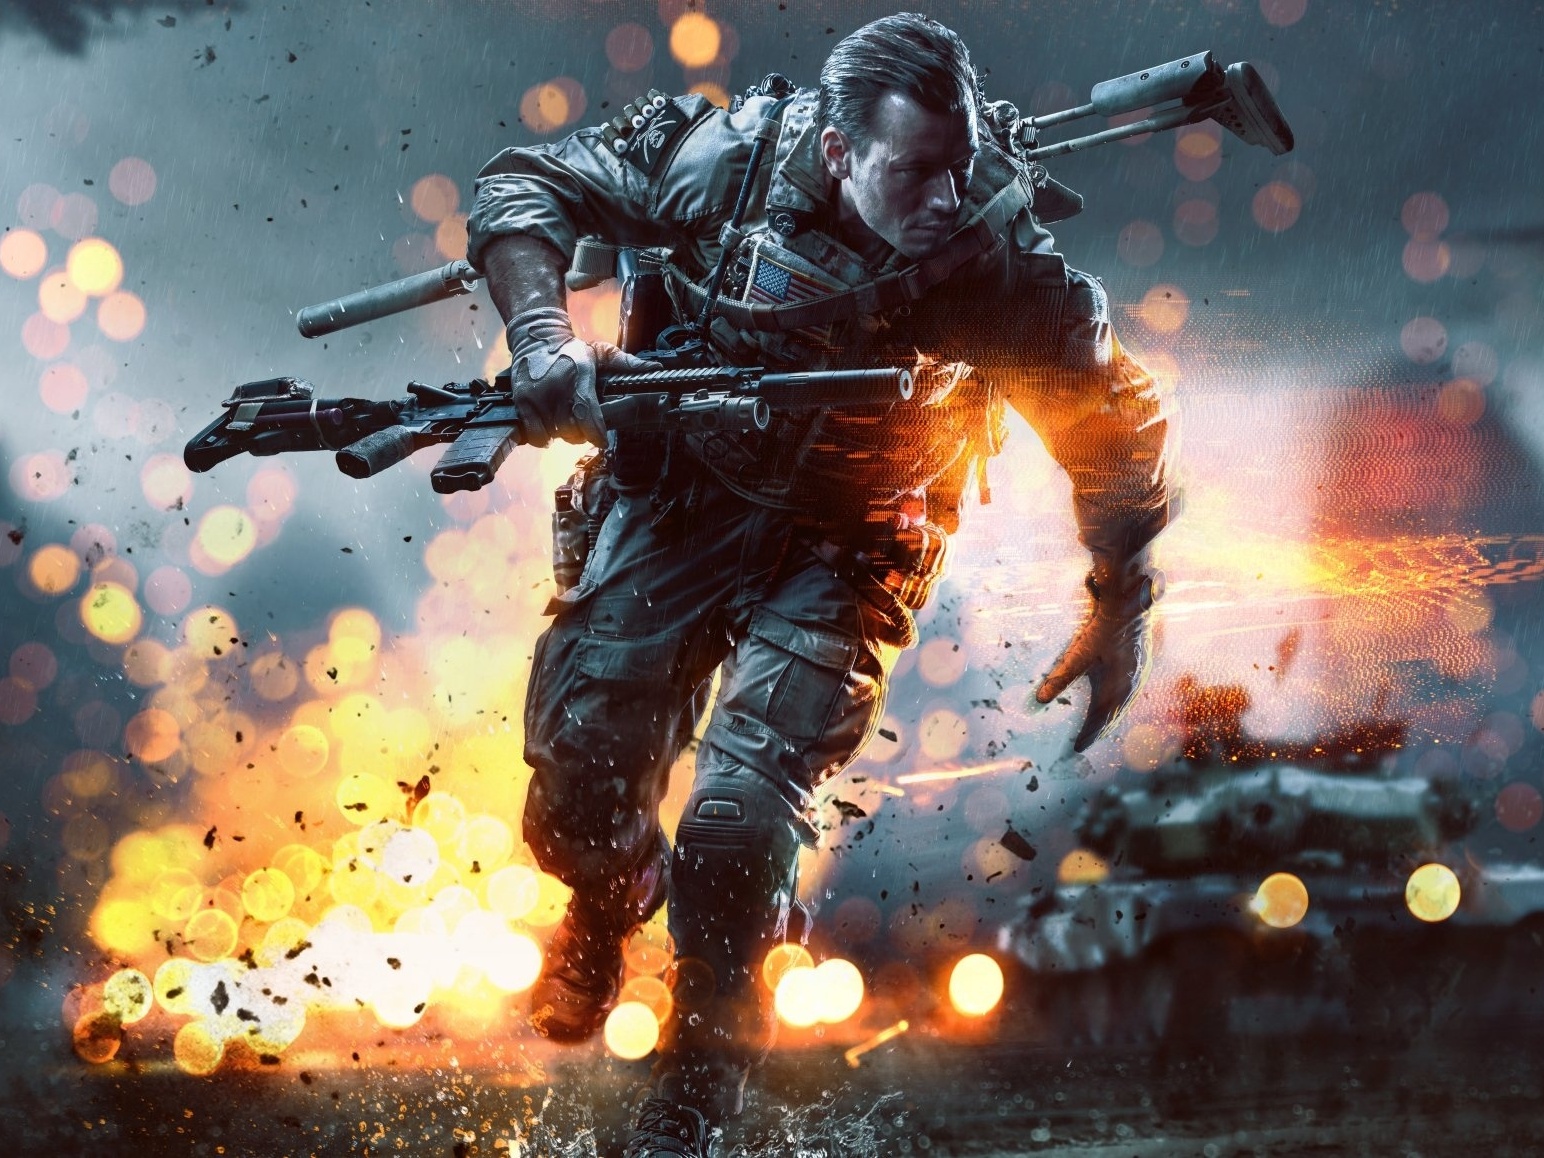 Battlefield 4 - Jogo xbox 360 Midia Fisica em Promoção na Americanas